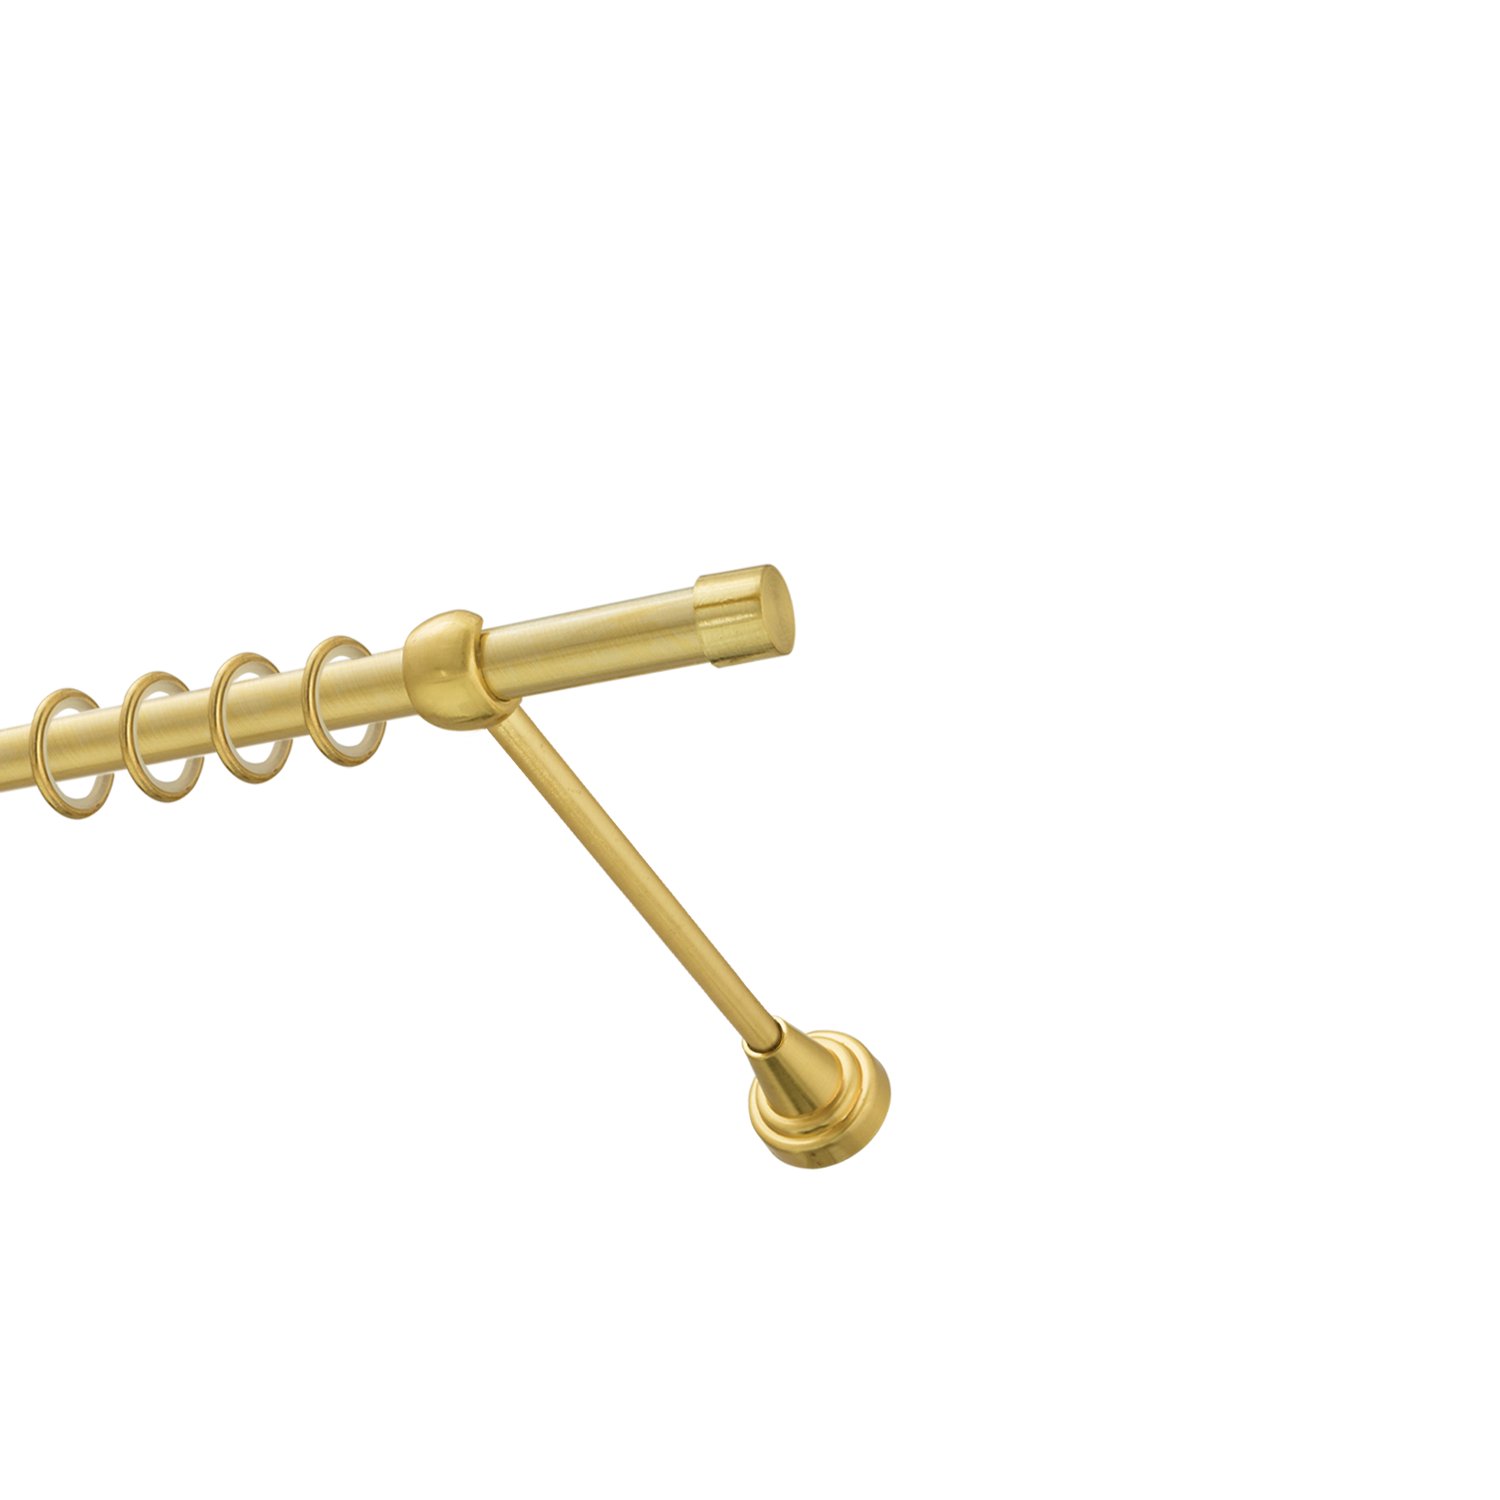 Металлический карниз для штор Заглушка, однорядный 16 мм, золото, гладкая штанга, длина 200 см - фото Wikidecor.ru